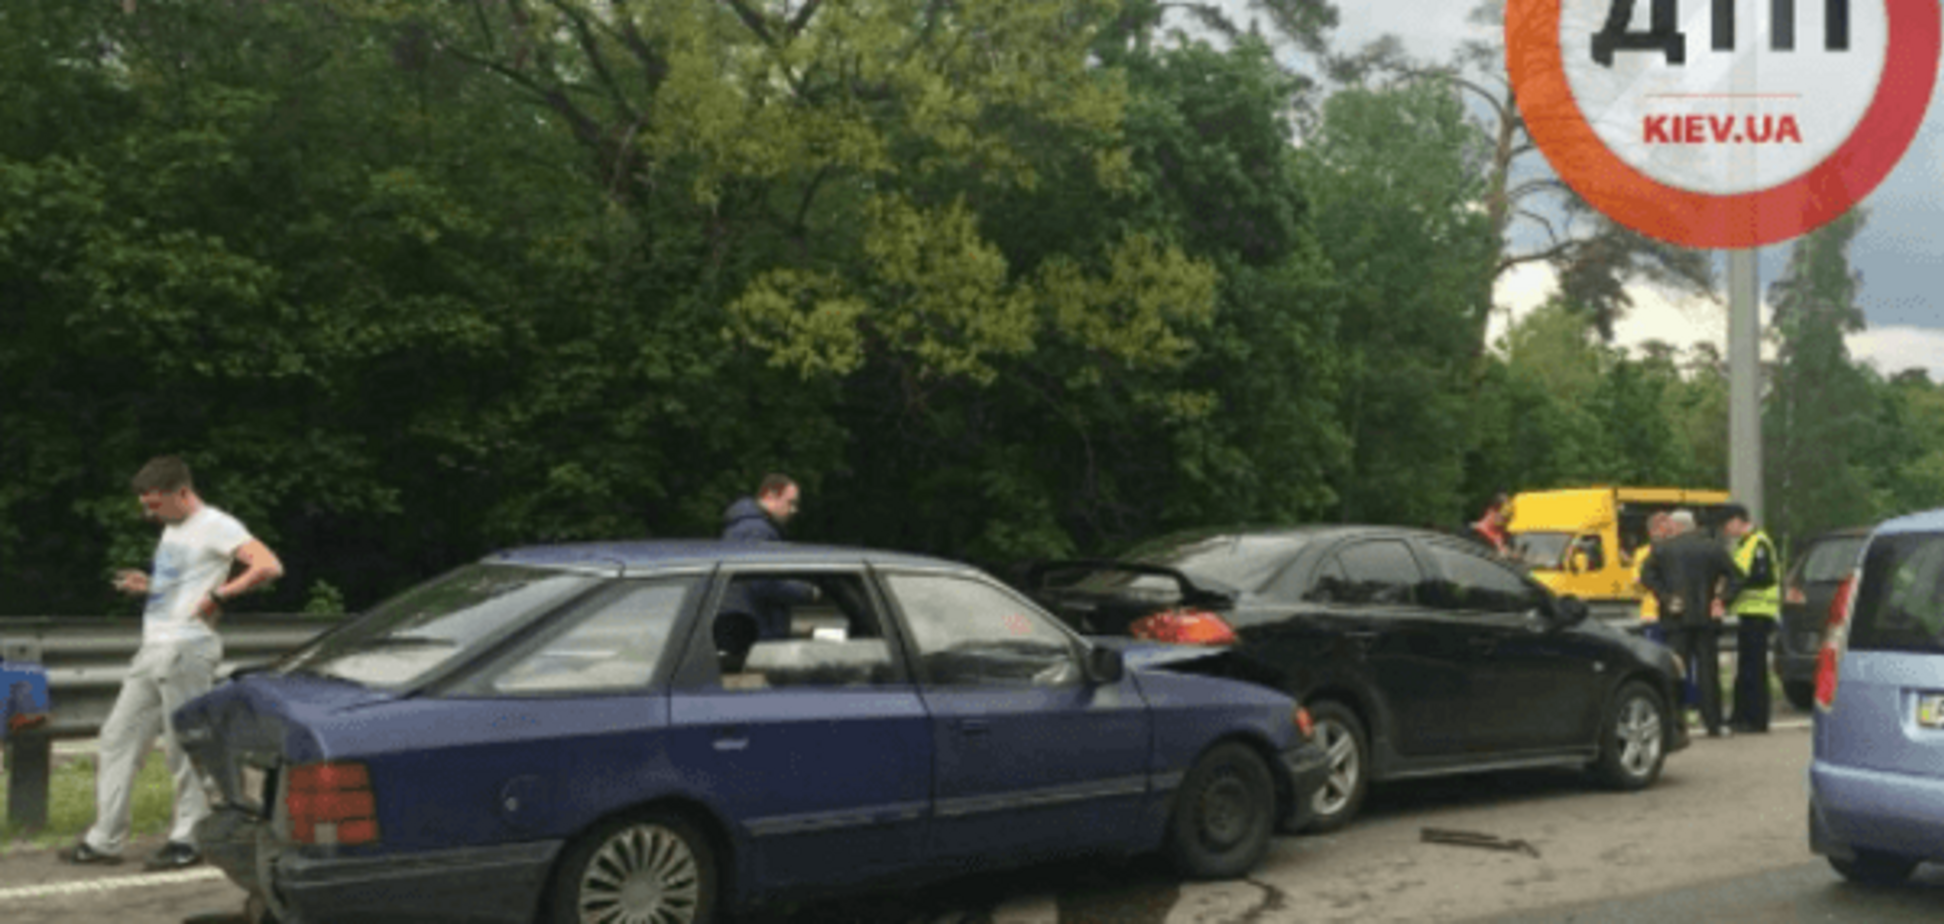 Масштабна ДТП у Києві: зіткнулися 8 авто, пасажирка отримала серйозні травми